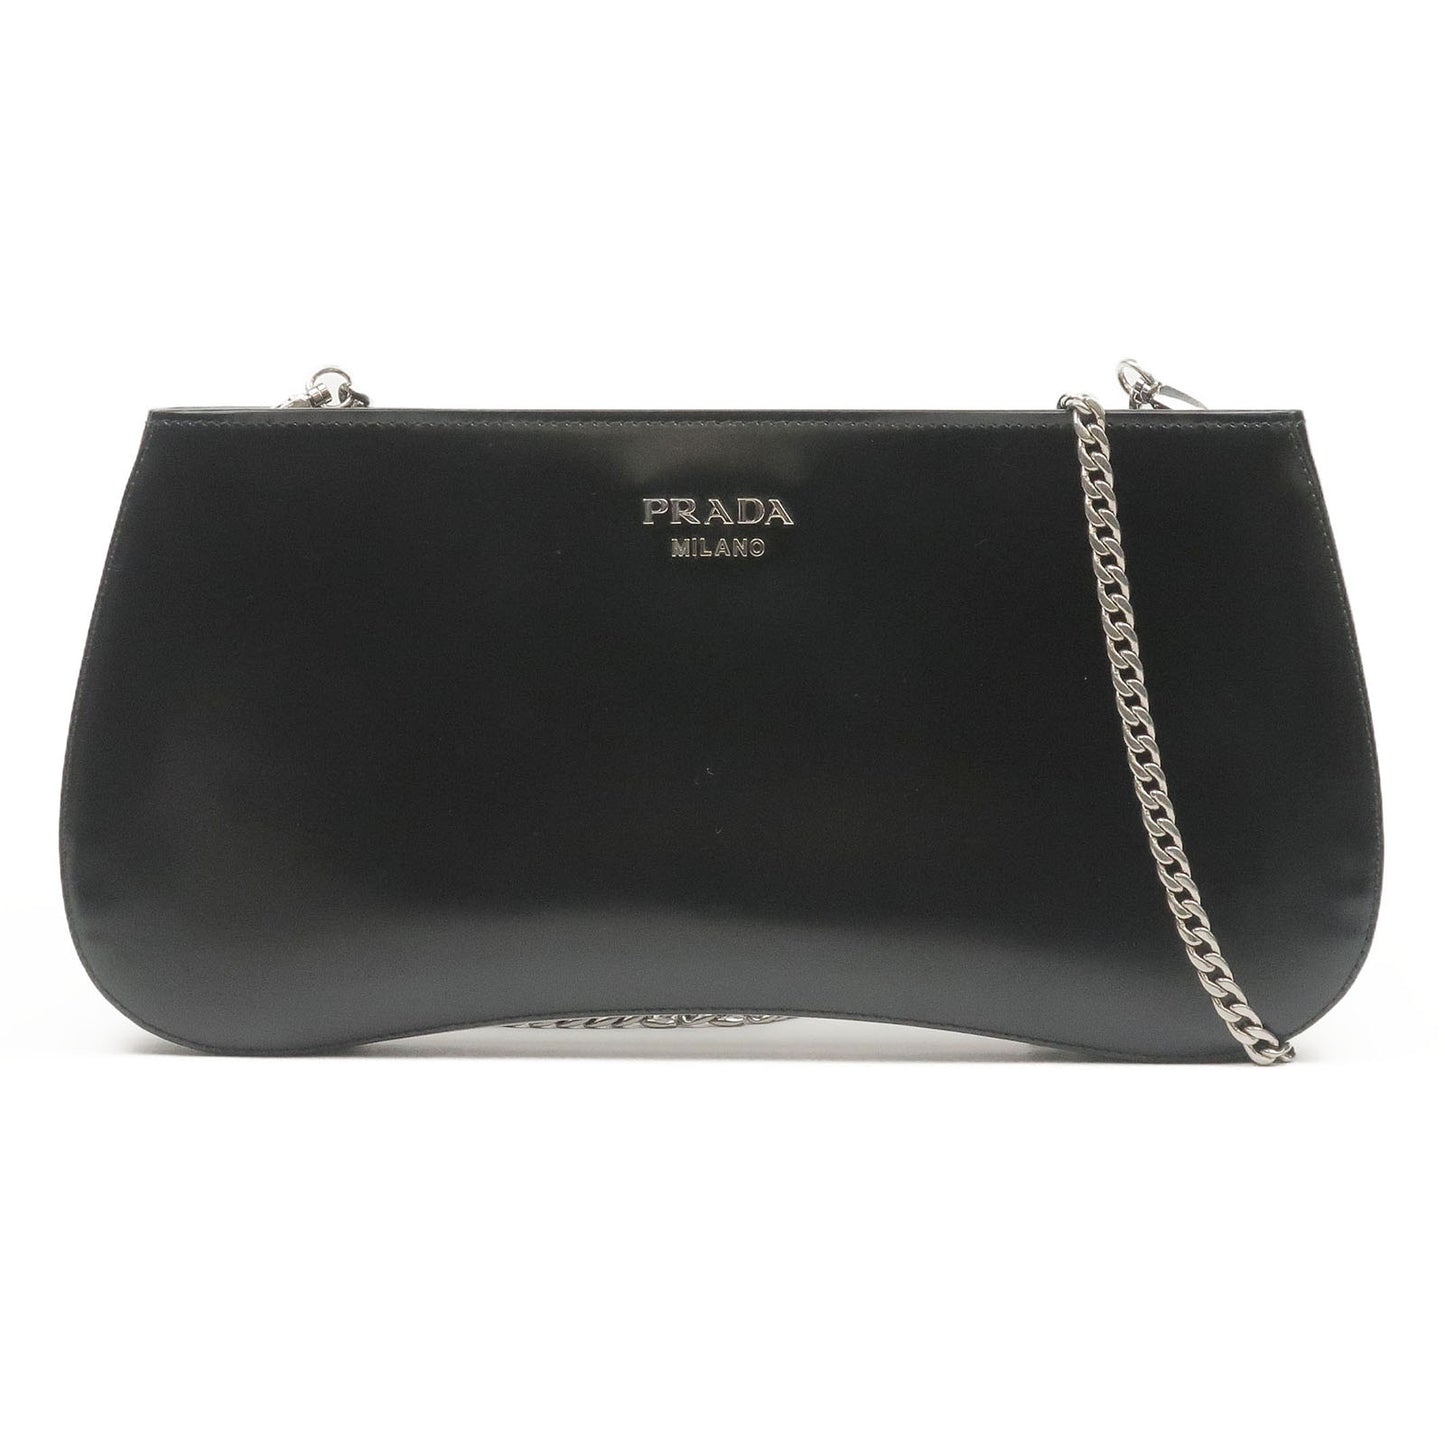 PRADA-Sydney-Leather-2Way-Chain-Shoulder-Bag-Black-1BF085